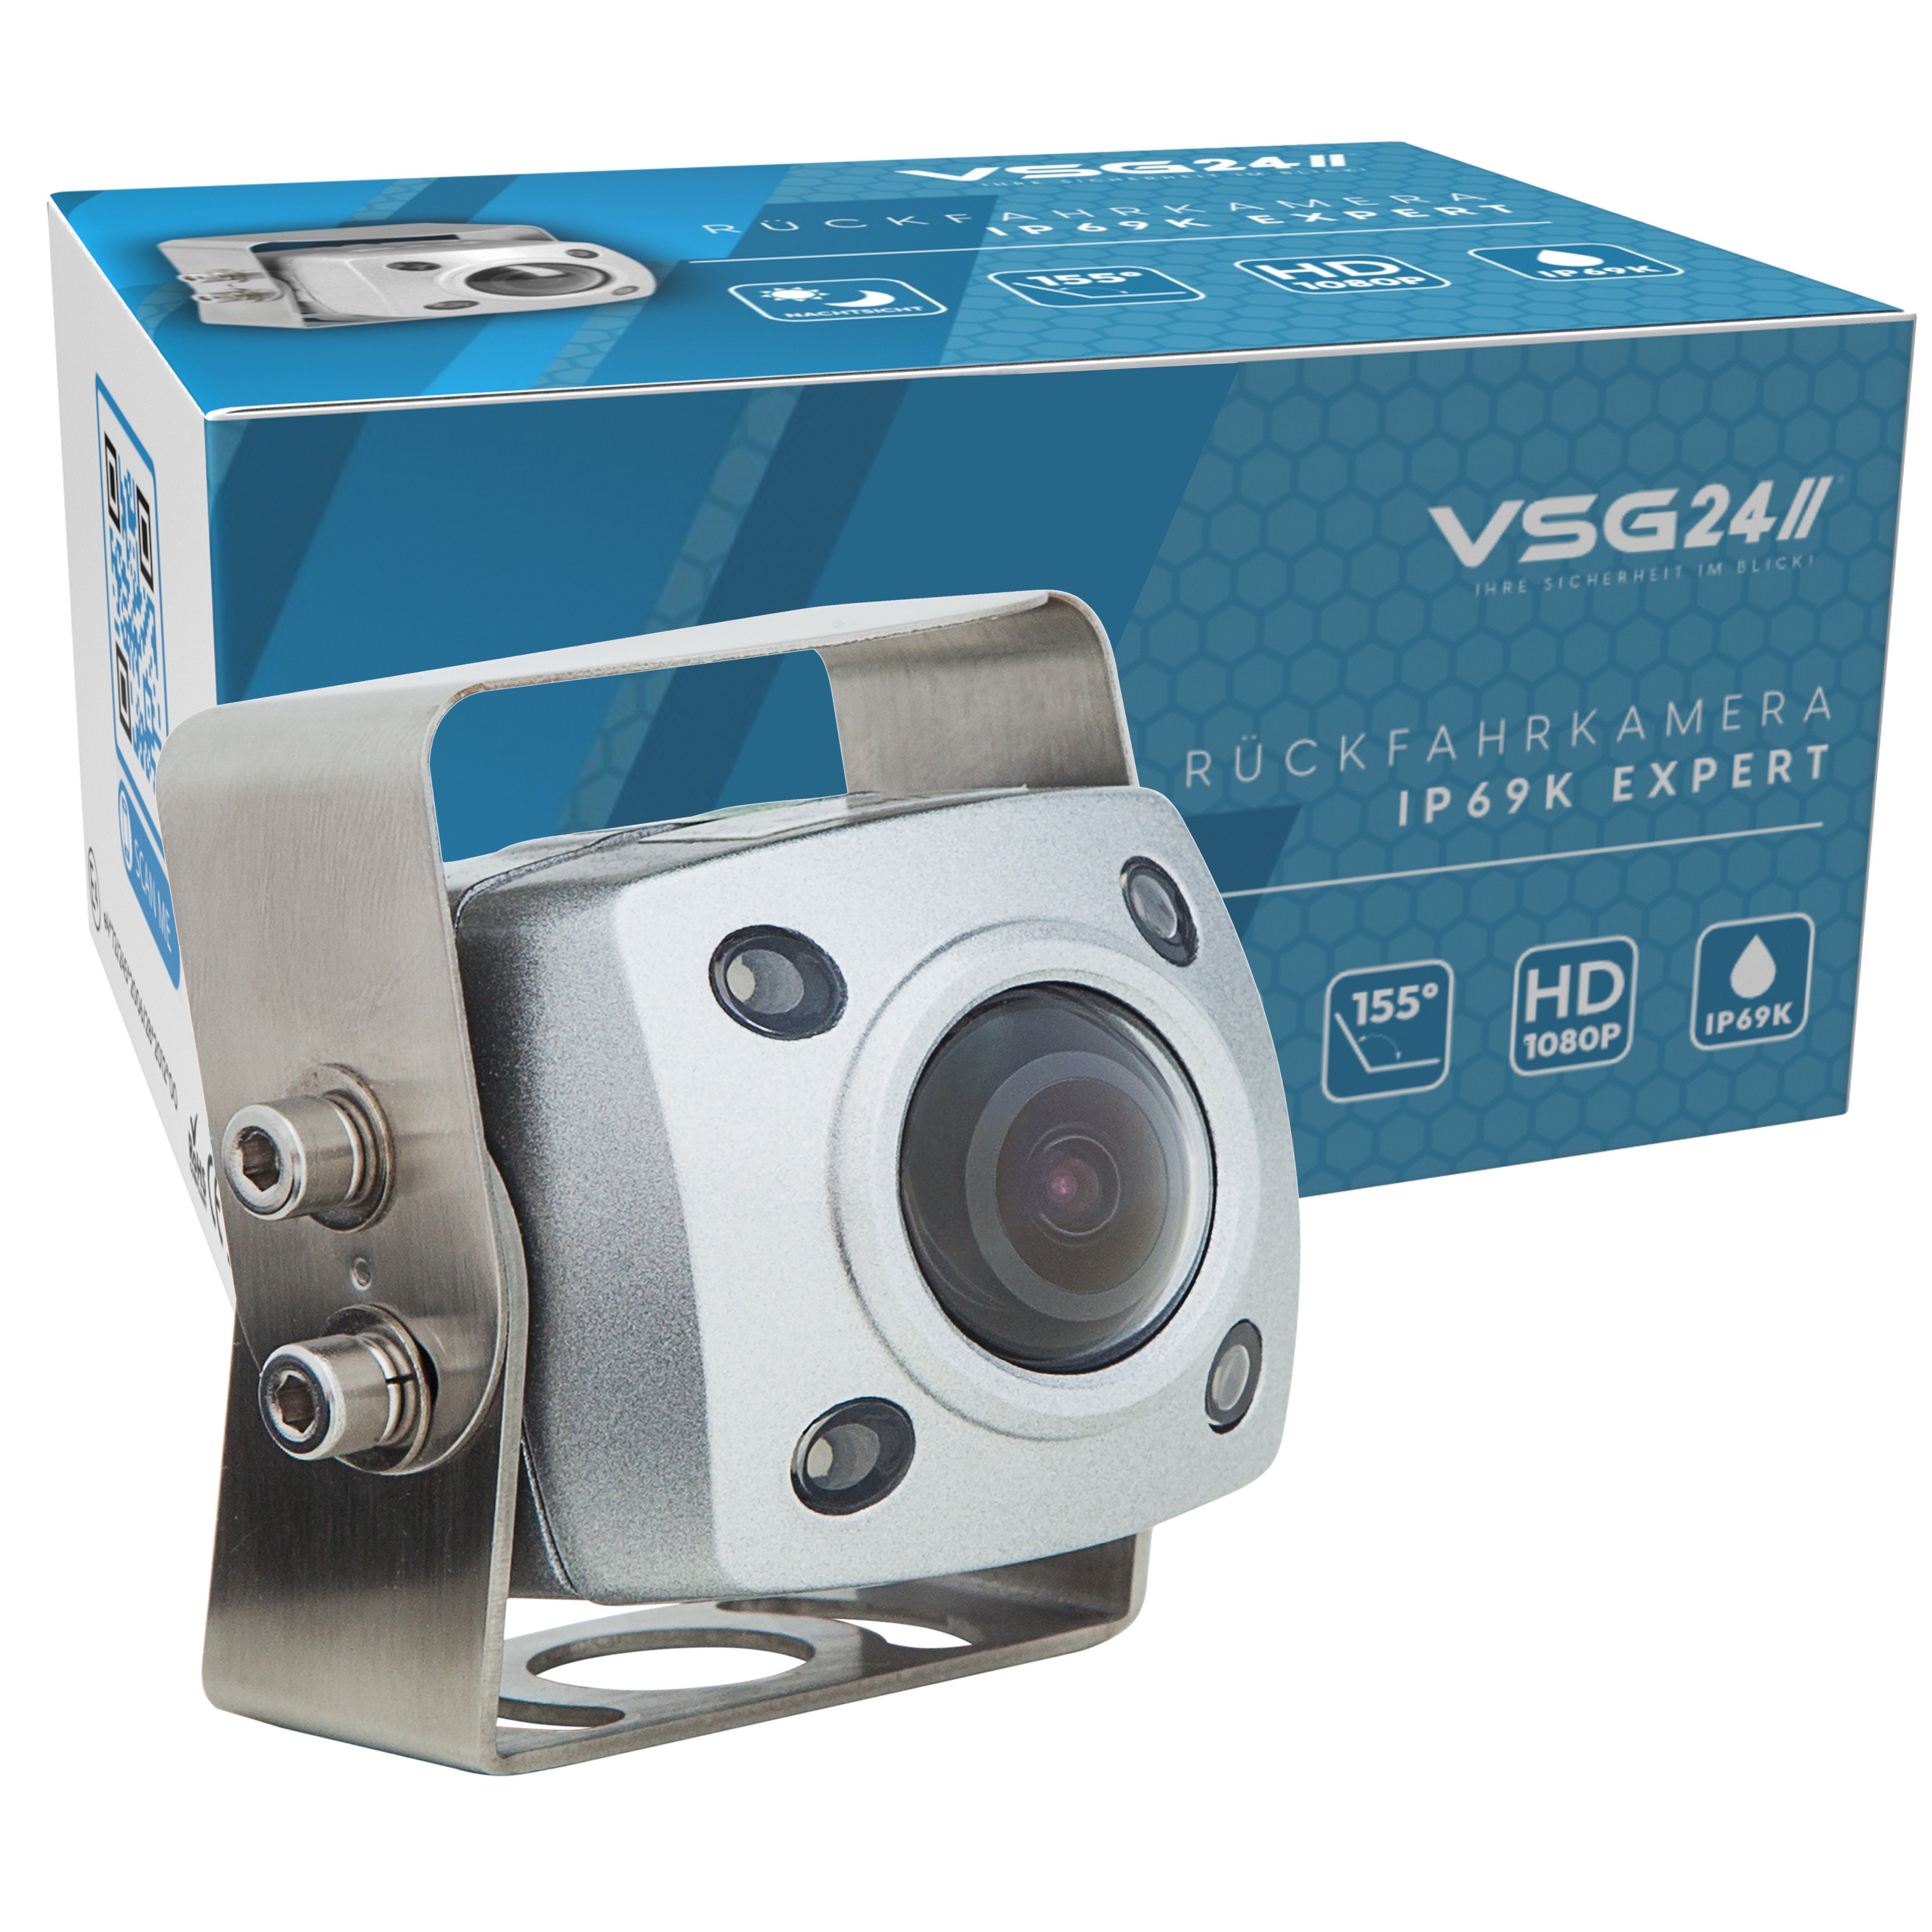 VSG24 IP69K EXPERT Robuste Schwerlast Rückfahrkamera mit FULL HD Auflösung Rückfahrkamera (Nachtsicht, 12V, HD-1080P, 155° Blickwinkel, Wohnmobil, LKW)